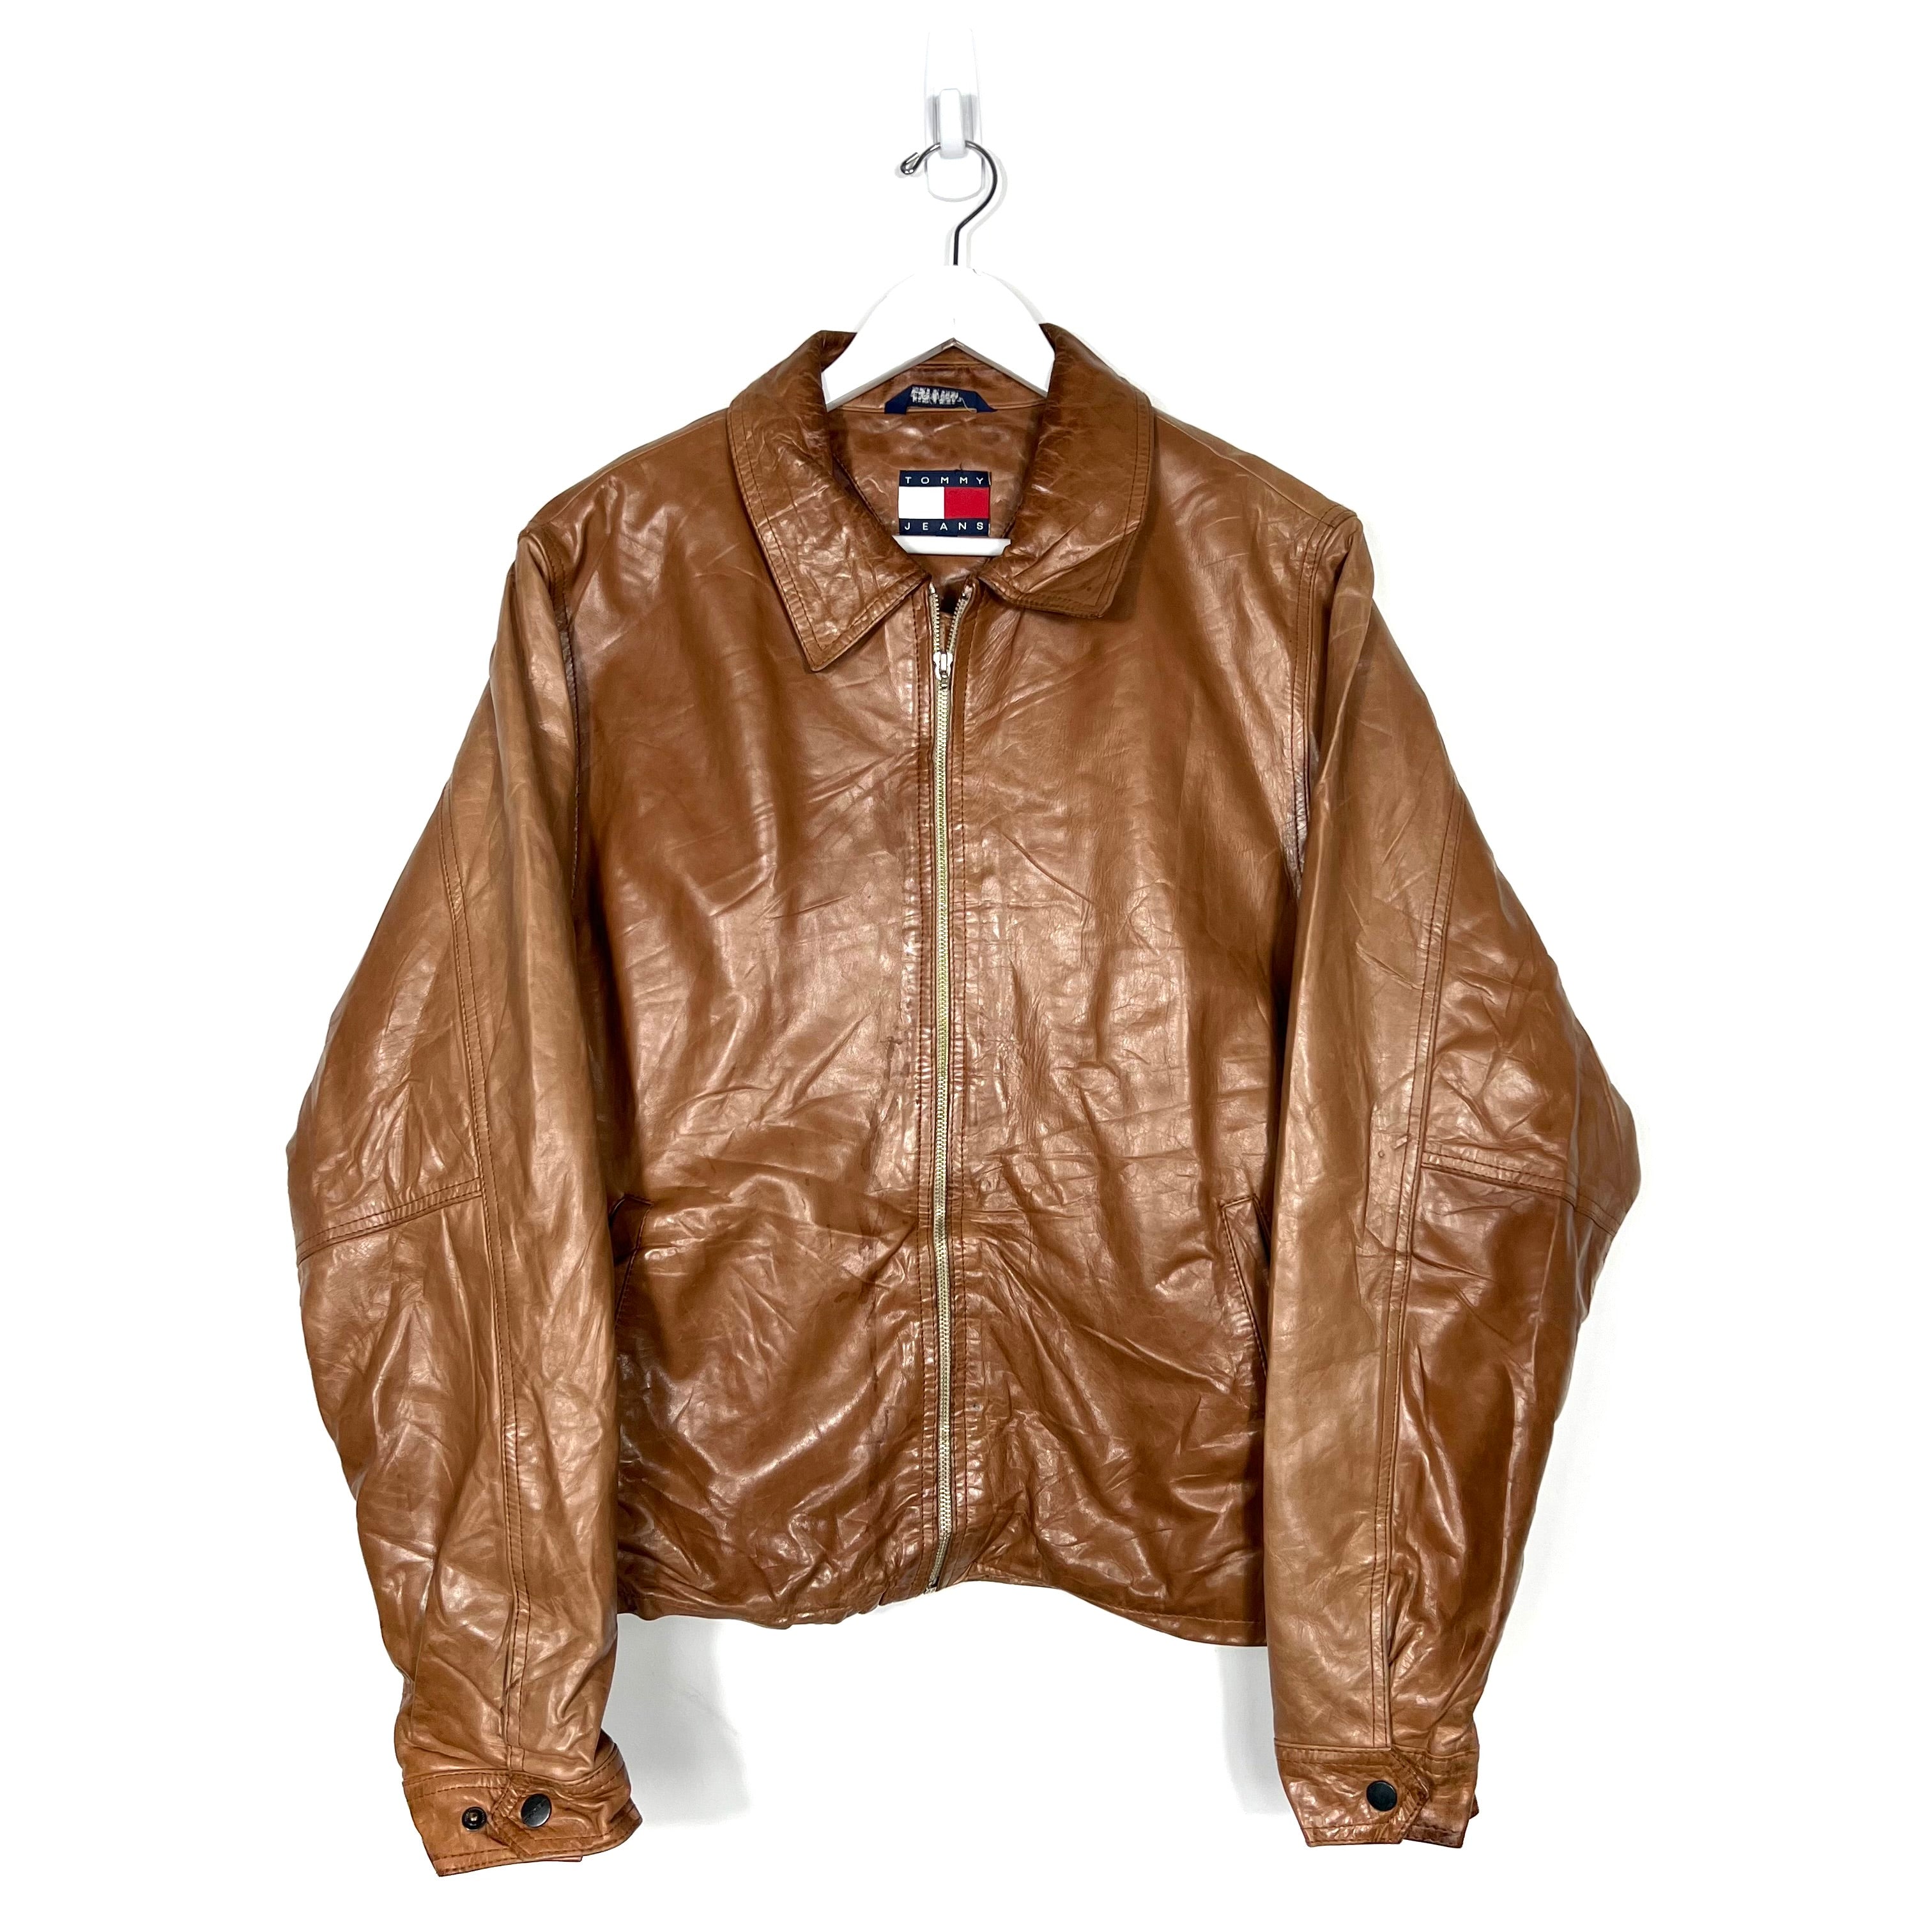 Vintage Tommy Hilfiger Leather Jacket - Men's Medium